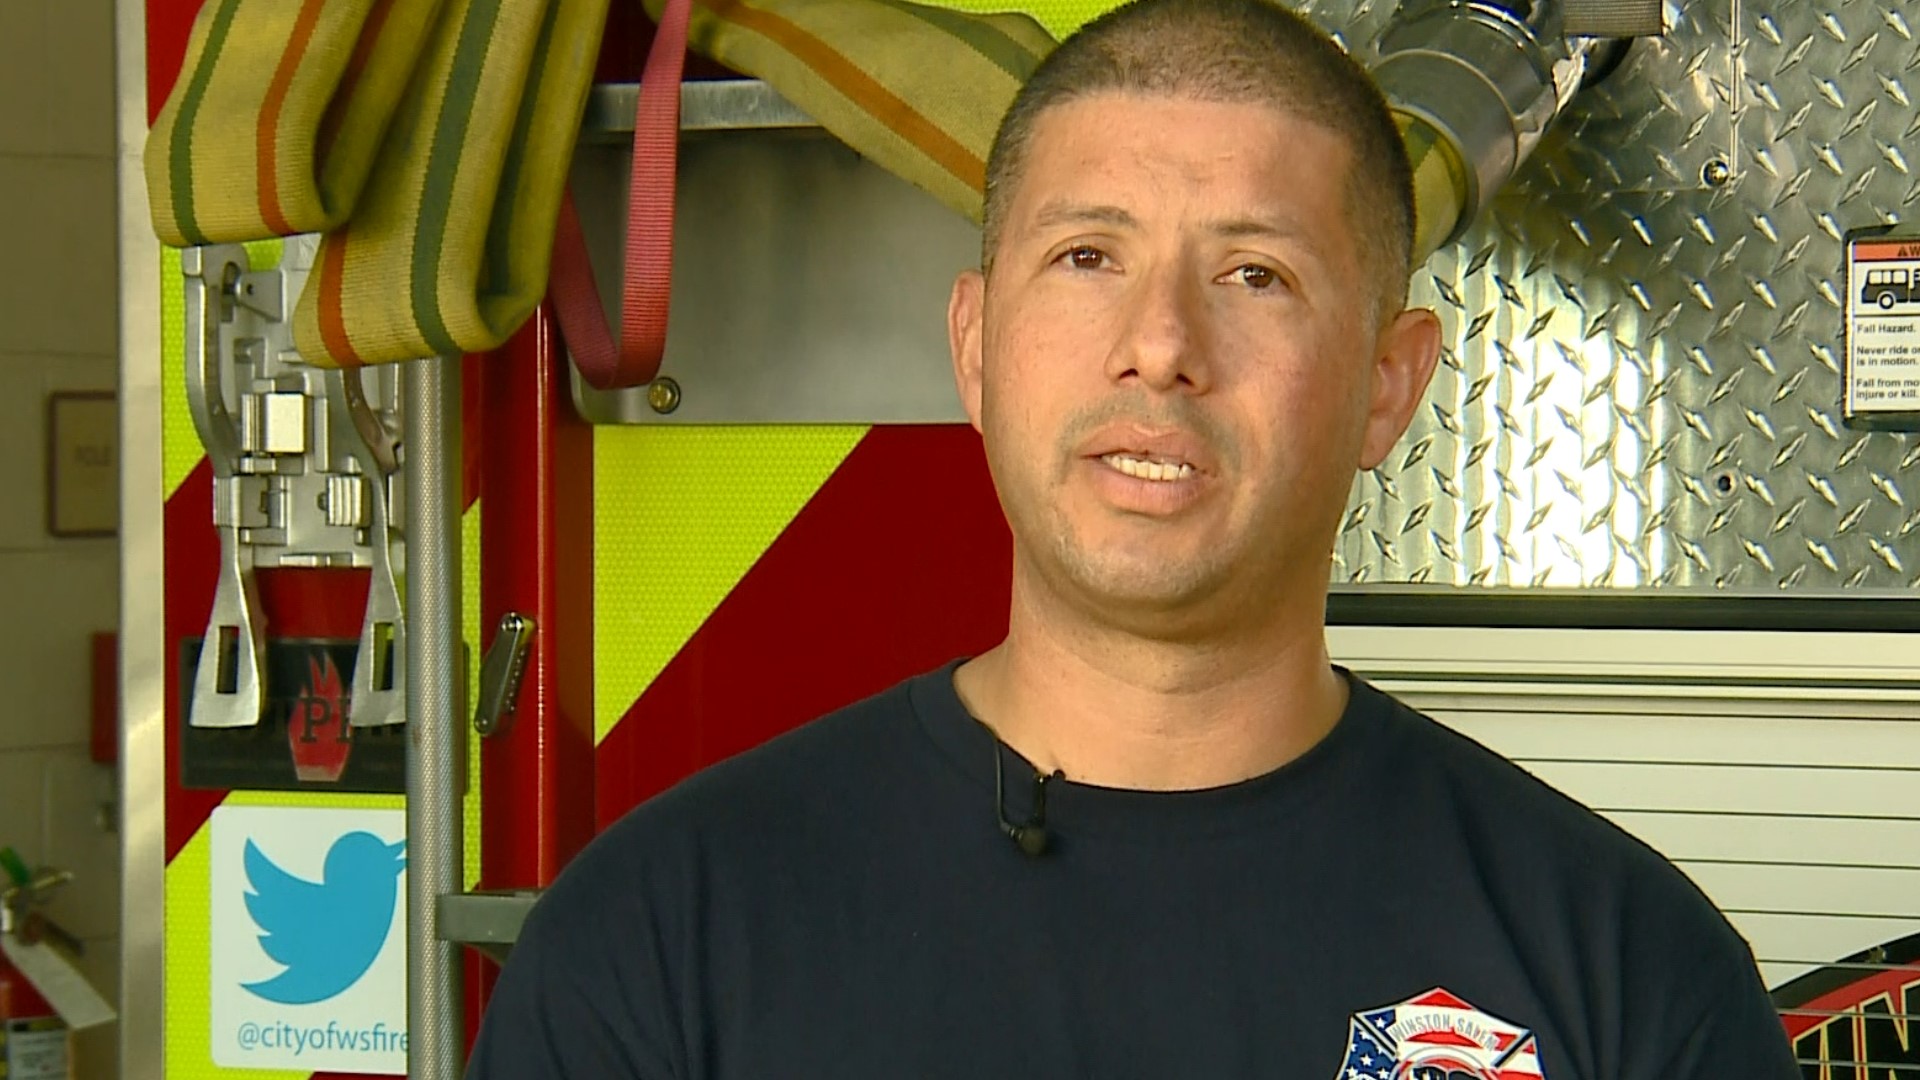 Un bombero comparte un mensaje sobre la seguridad contra incendios en las casas para la comunidad hispana.